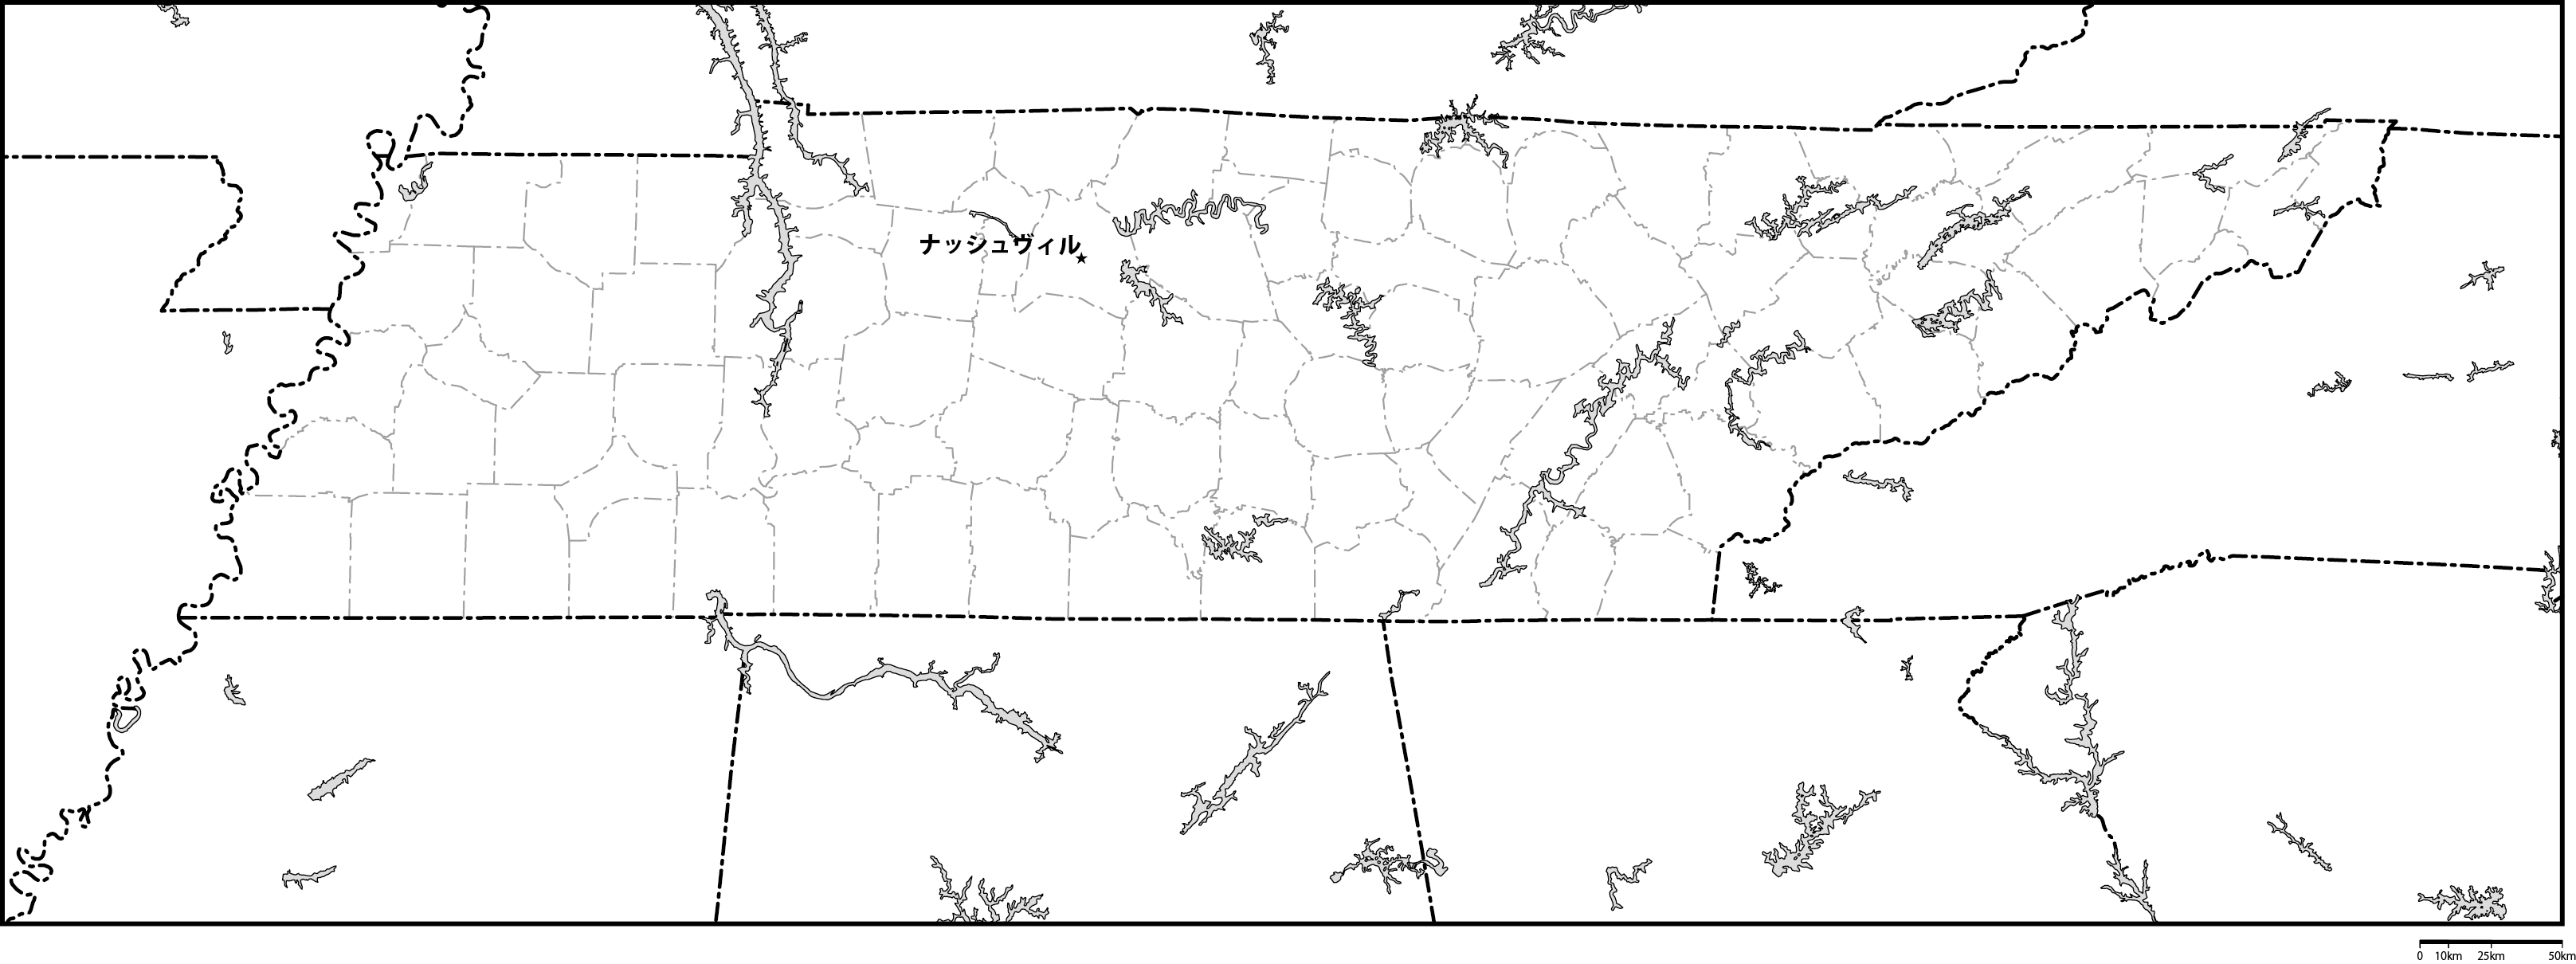 テネシー州郡分け白地図州都あり(日本語)フリーデータの画像